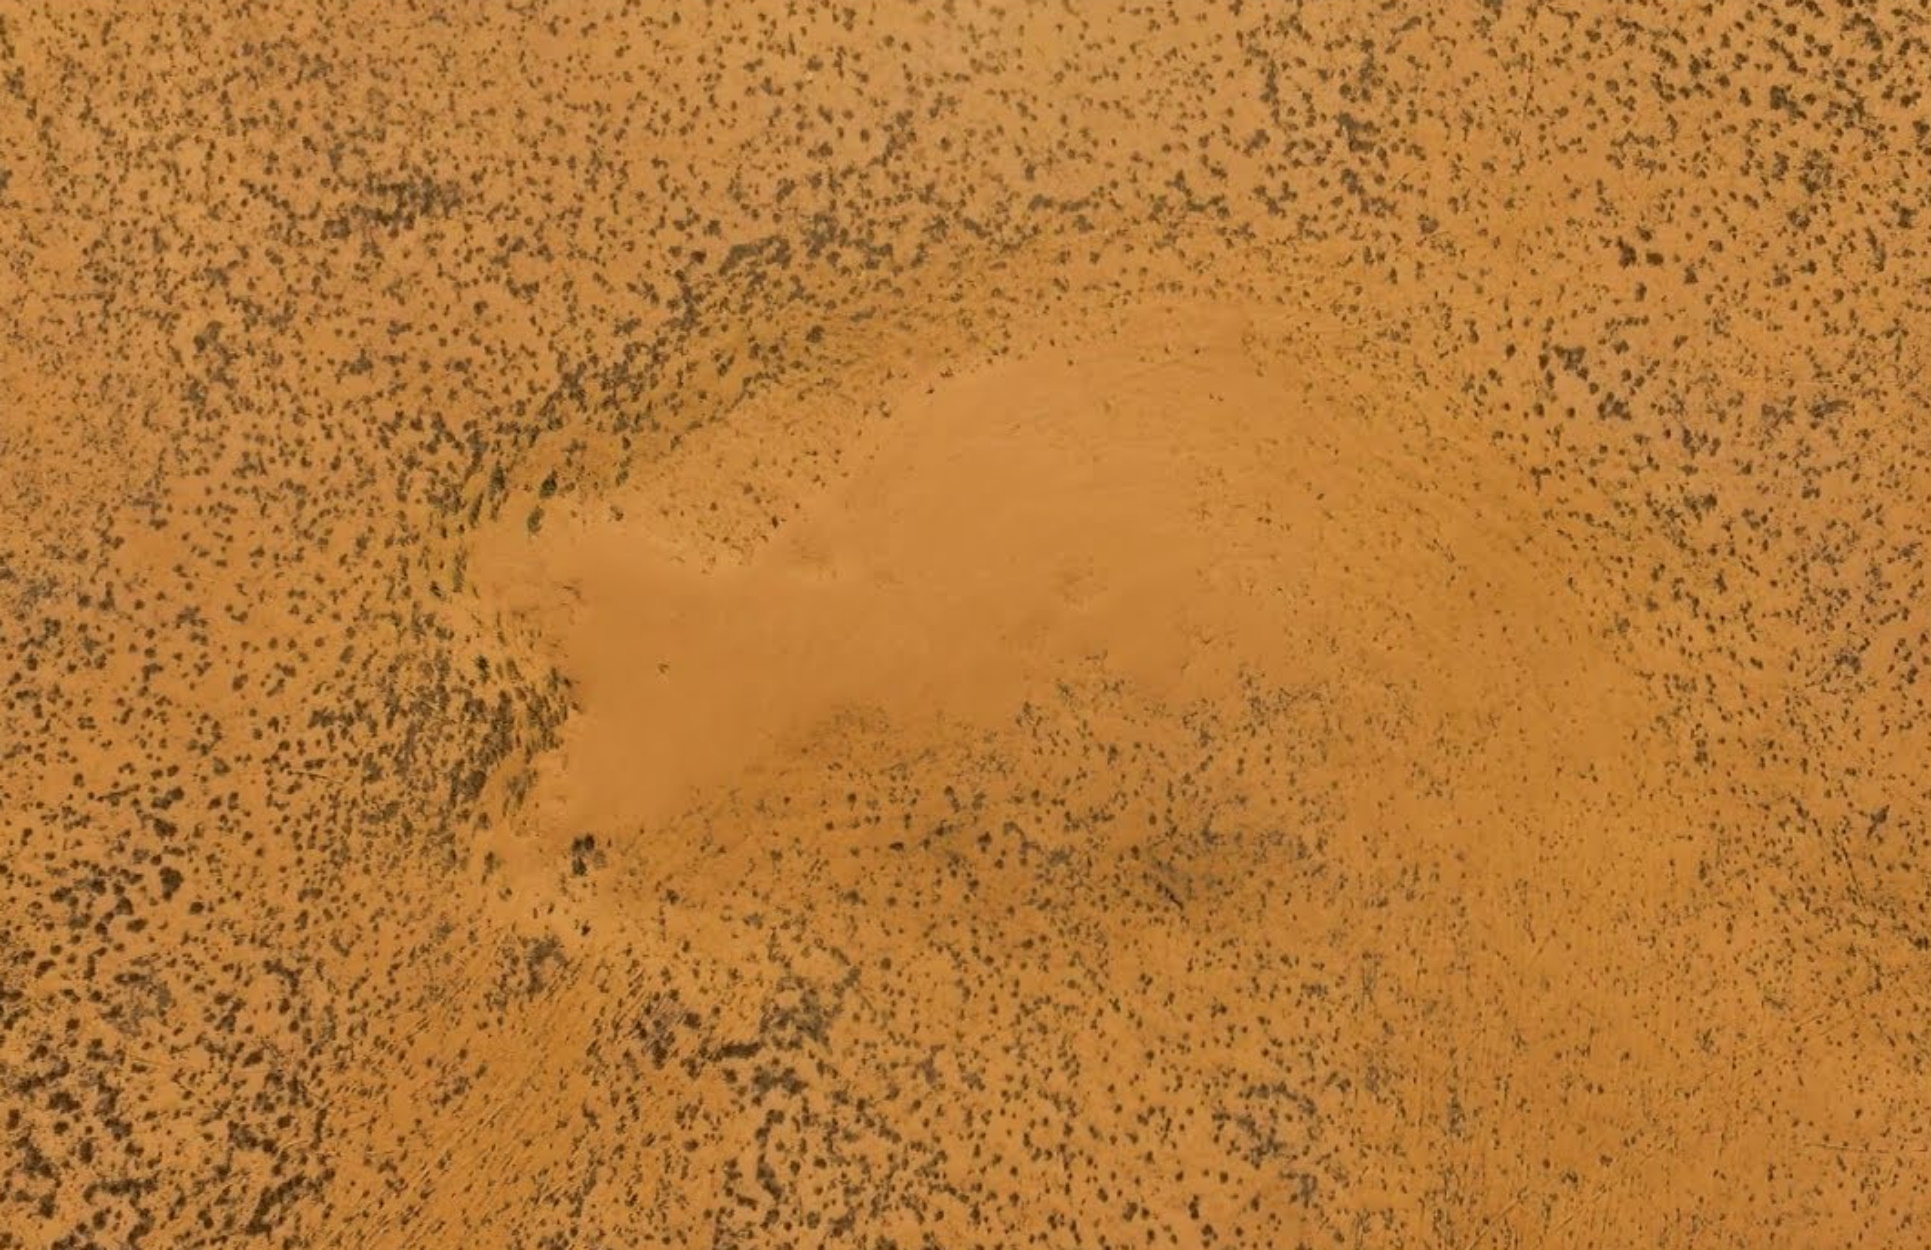 Λιβύη: 20 άνθρωποι πέθαναν από δίψα διασχίζοντας την έρημο μετά από βλάβη στο αυτοκίνητο